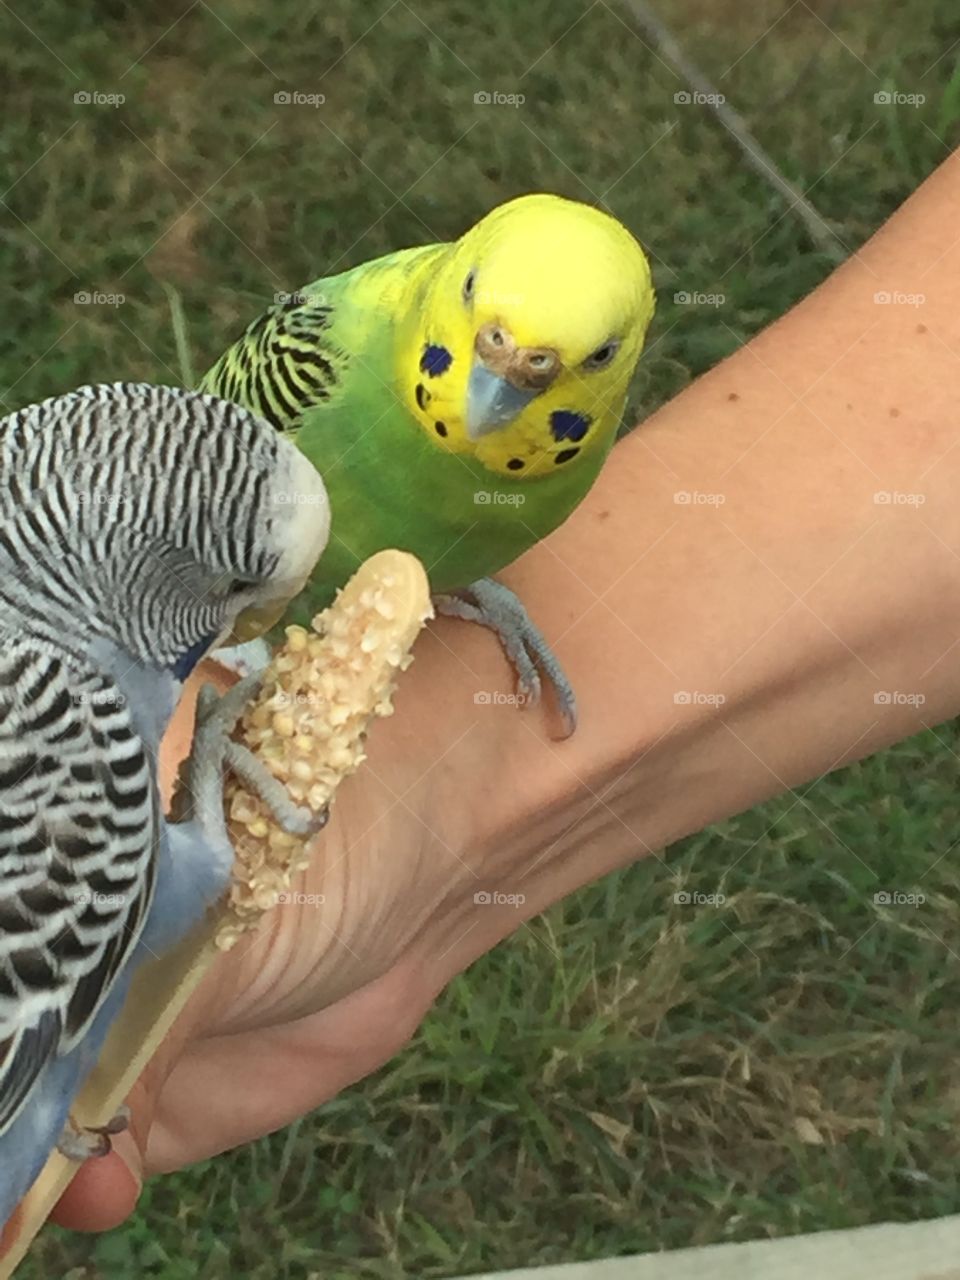 Parakeets sharing